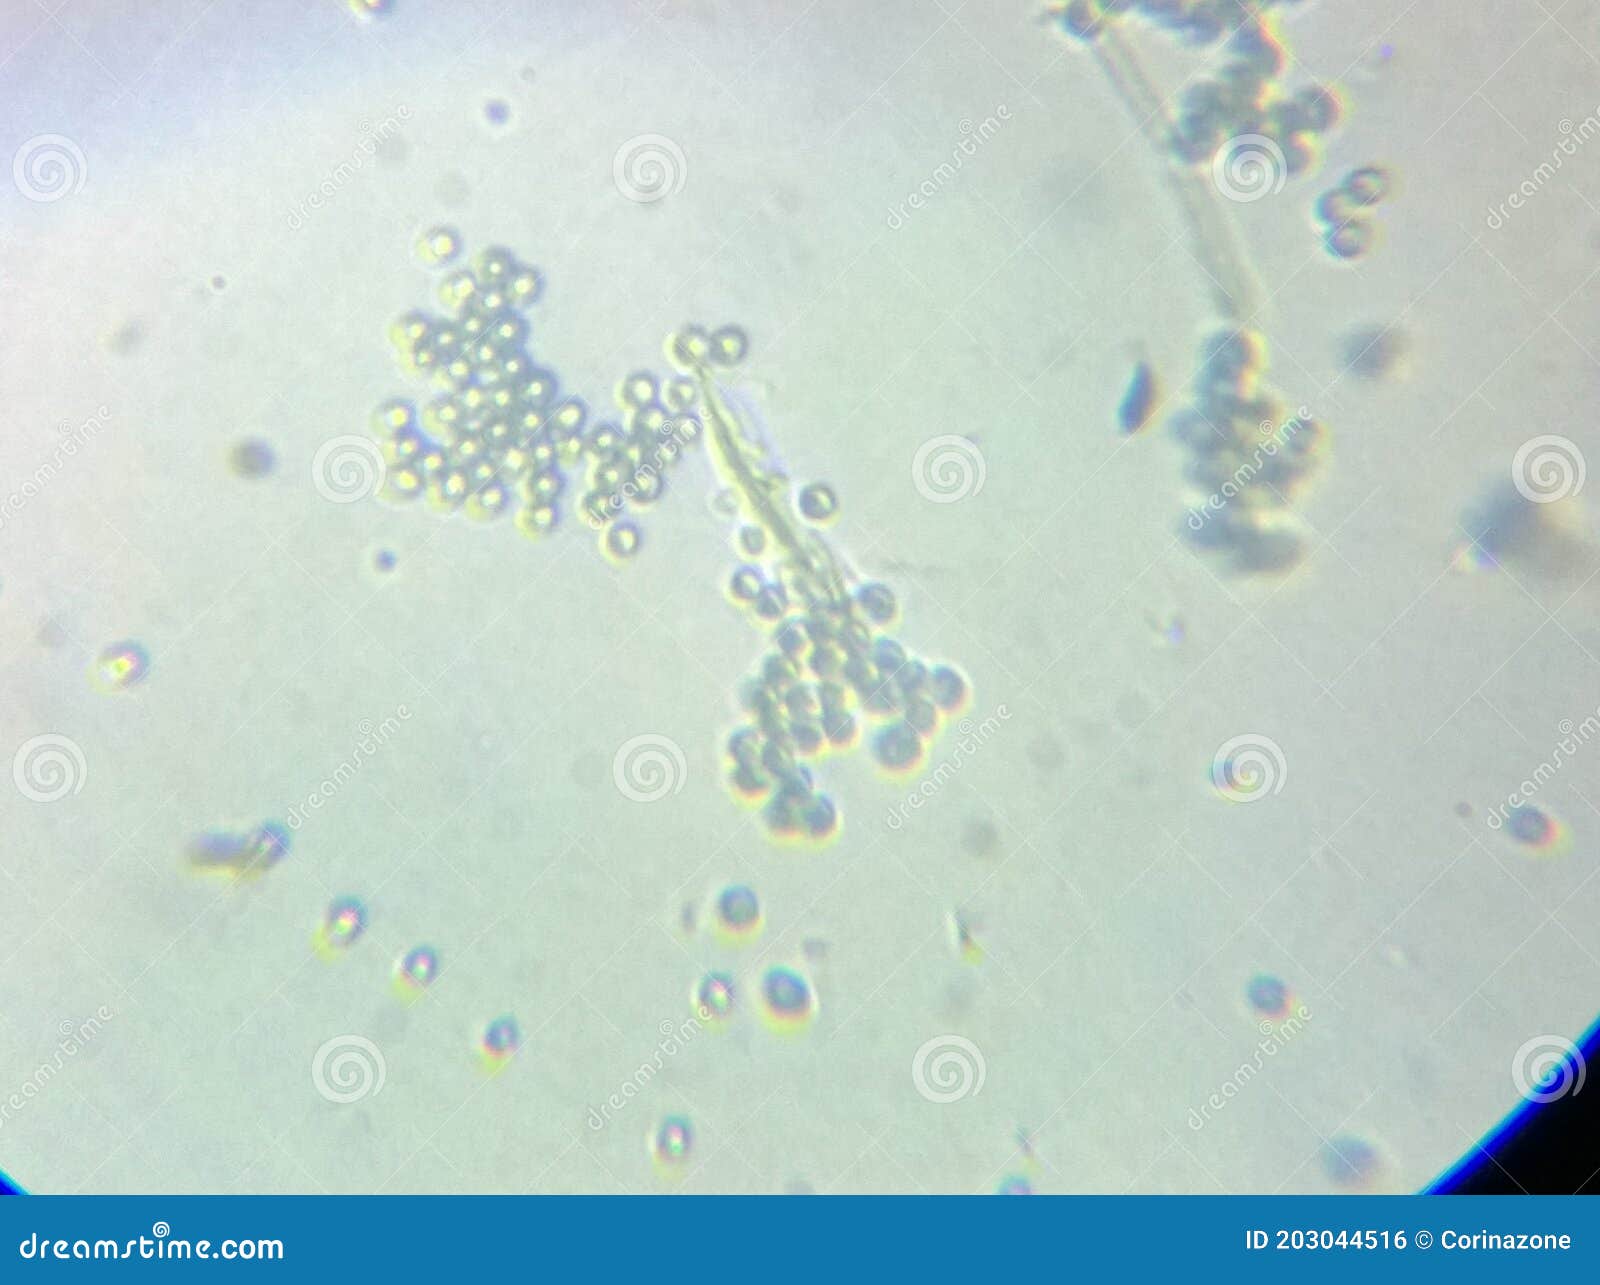 reducir café izquierda Penicillium Genus Moho Esporas Micelio Bajo Microscopio Foto de archivo -  Imagen de fungicida, molde: 203044516